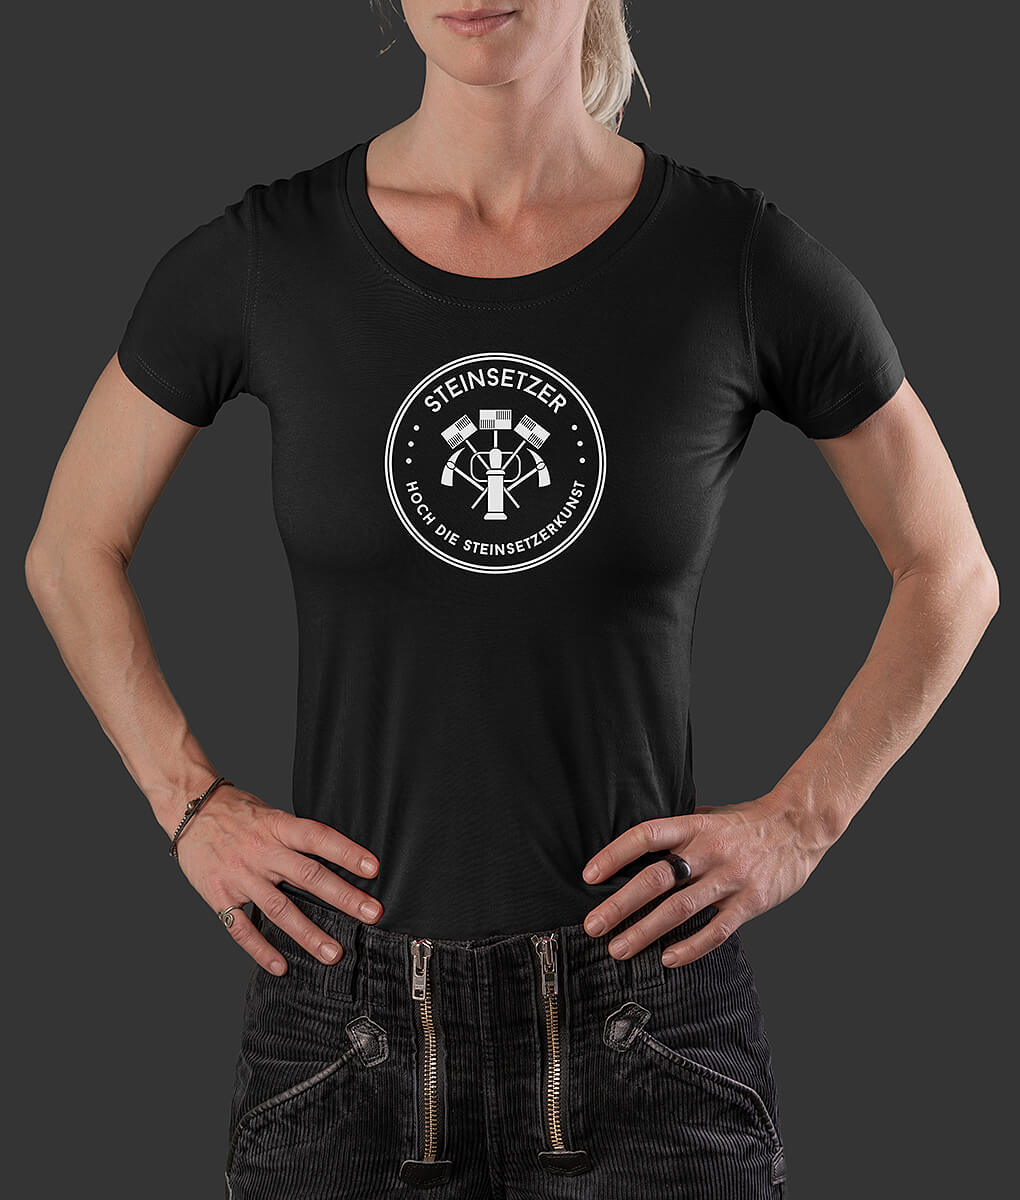 T-Shirt Louisa Siegel Steinsetzer Brust schwarz L